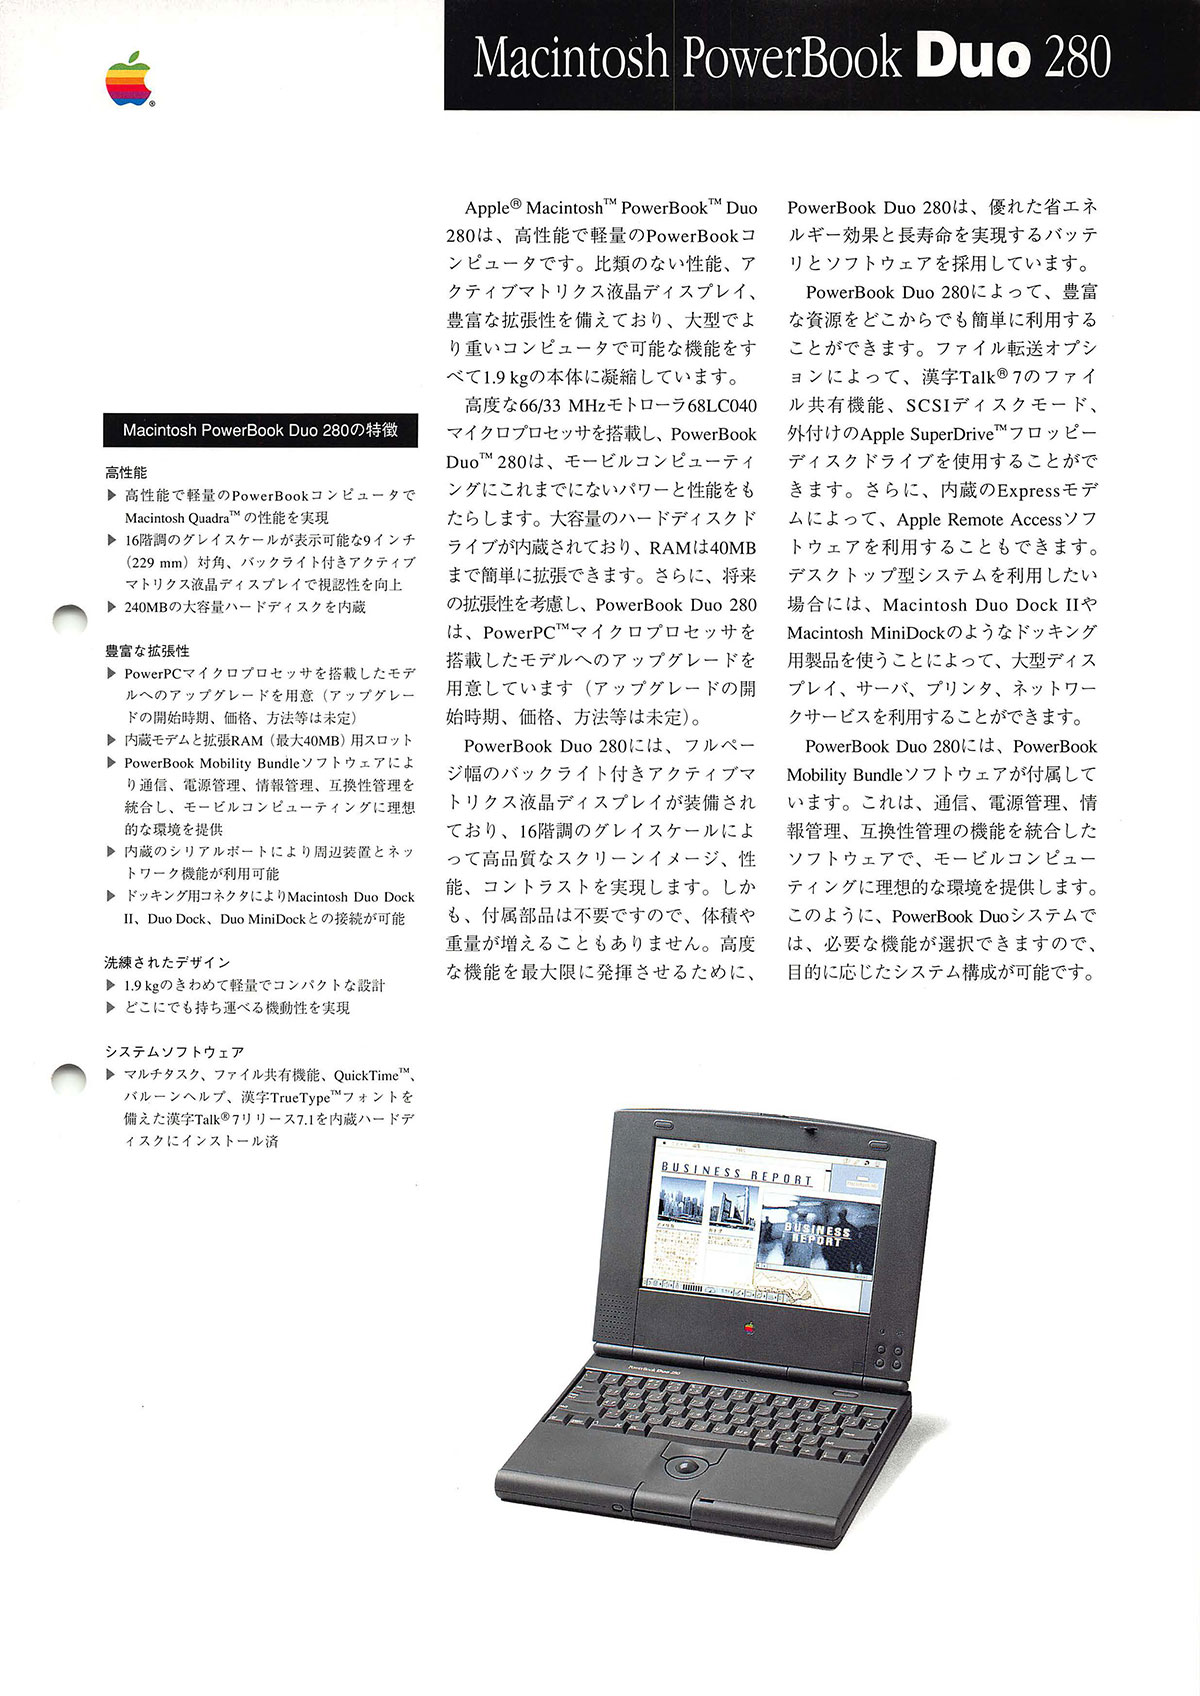 PowerBook Duo 280